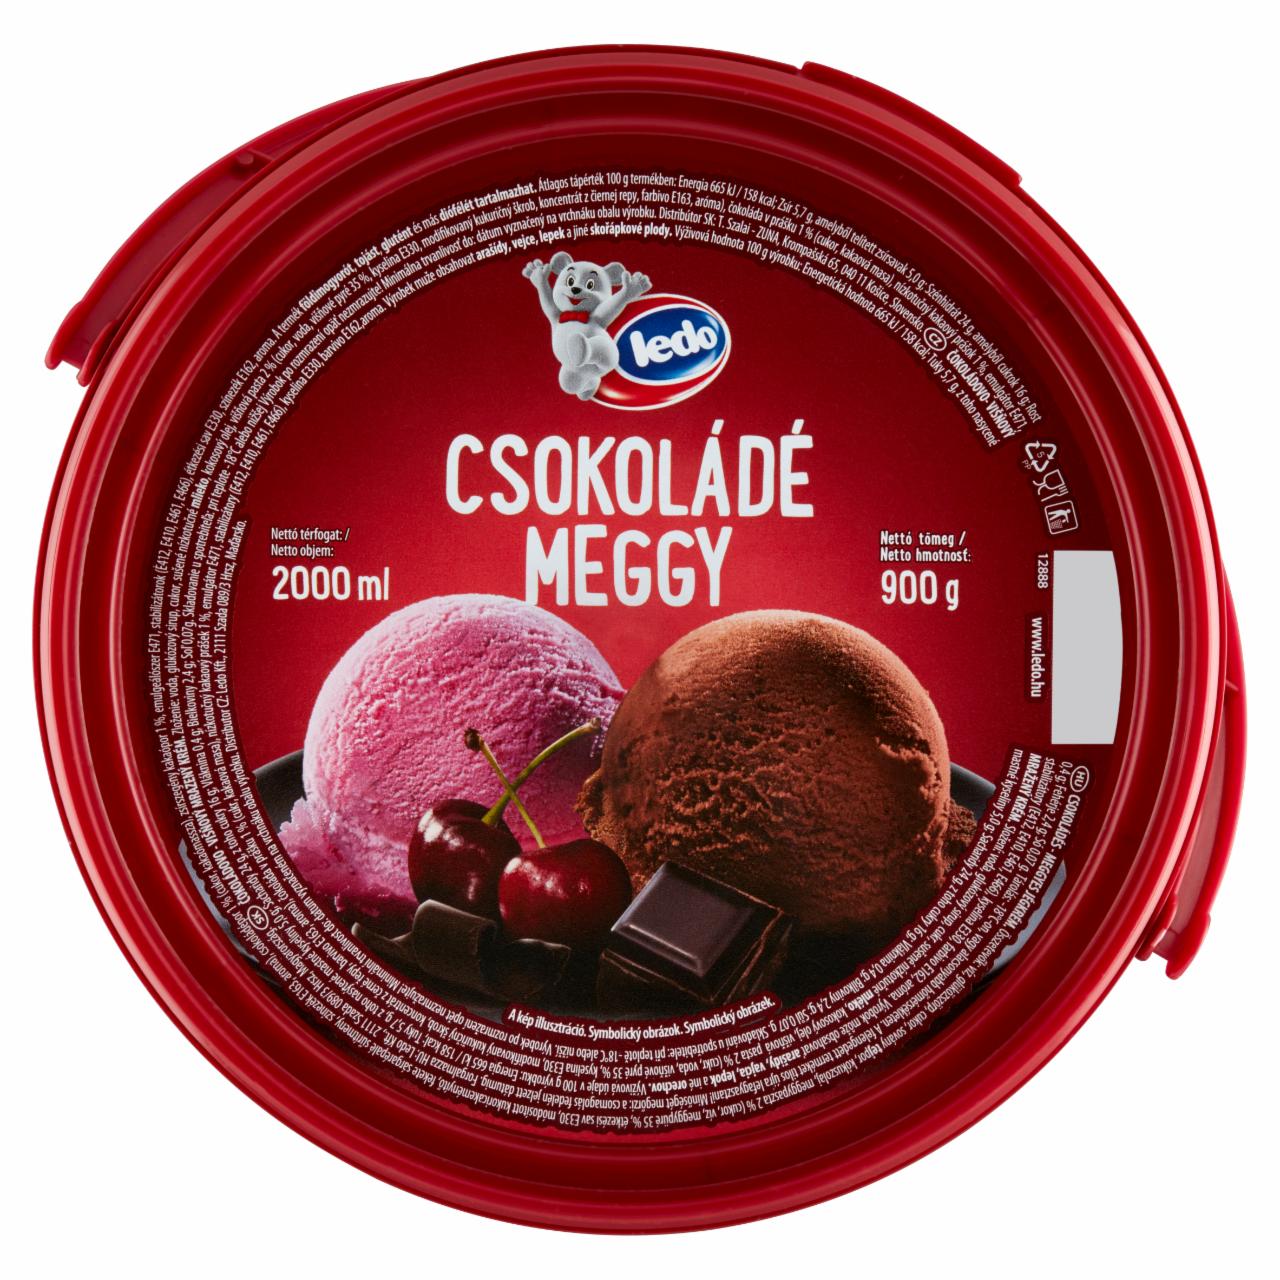 Képek - Ledo csokoládés-meggyes jégkrém 2000 ml